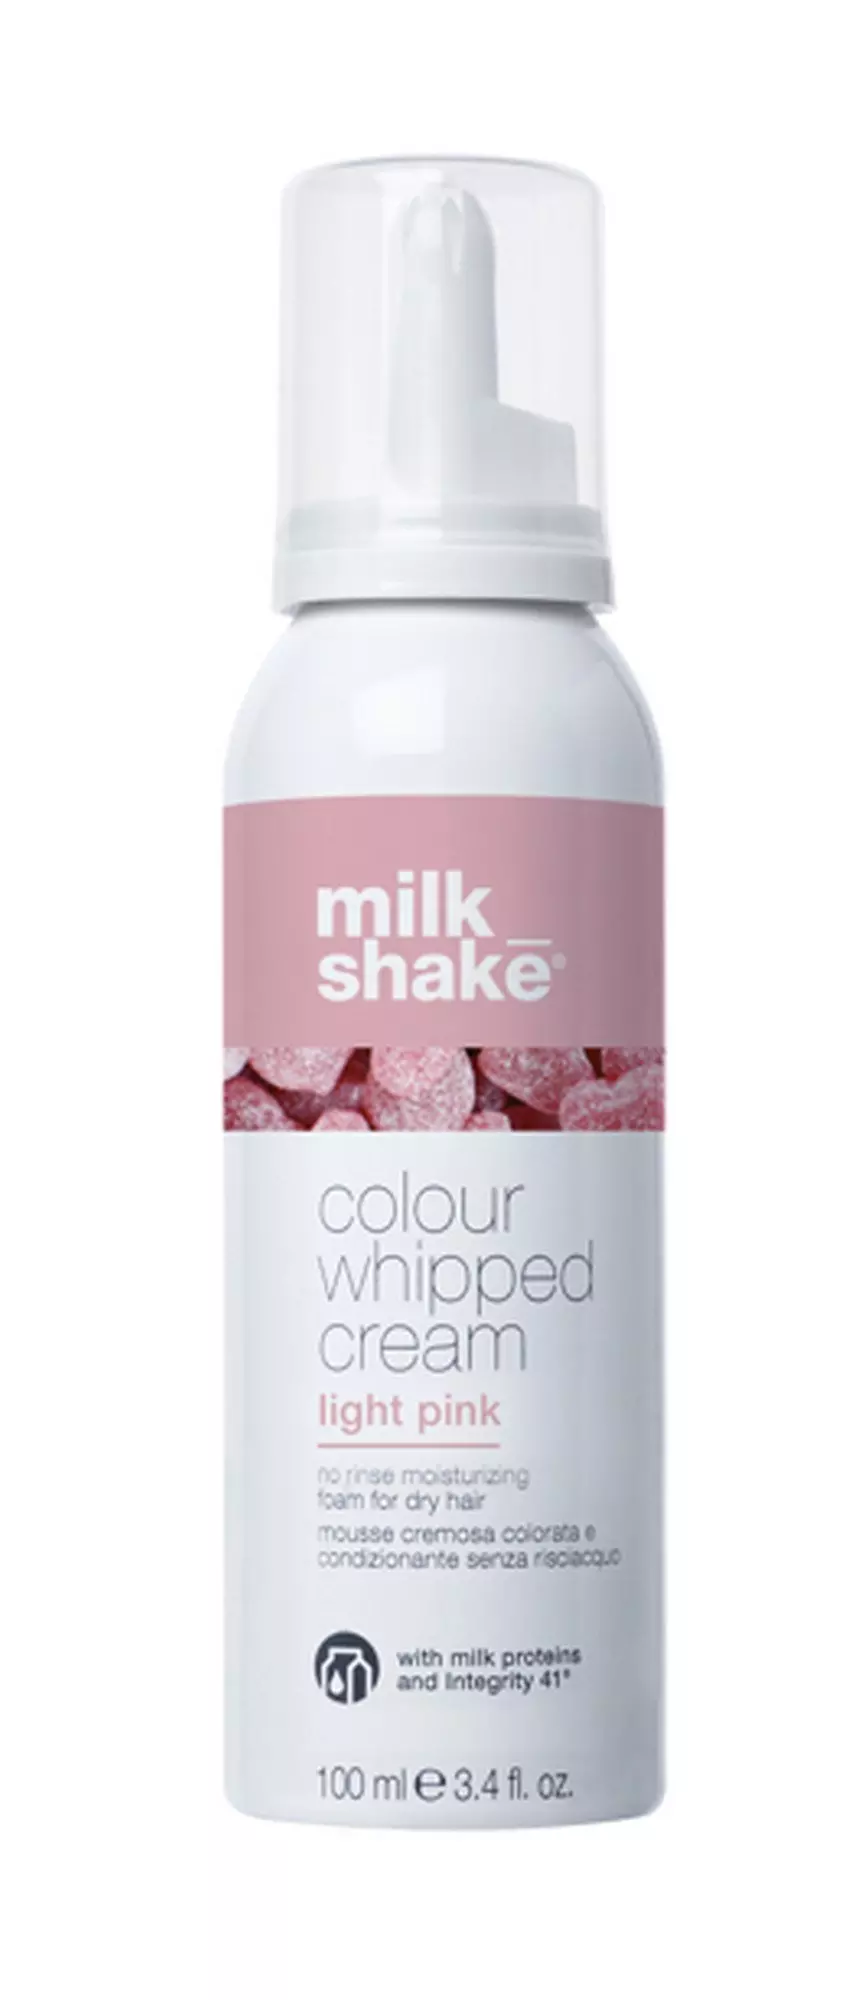 Milkshake Colour Whipped Cream Light Pink